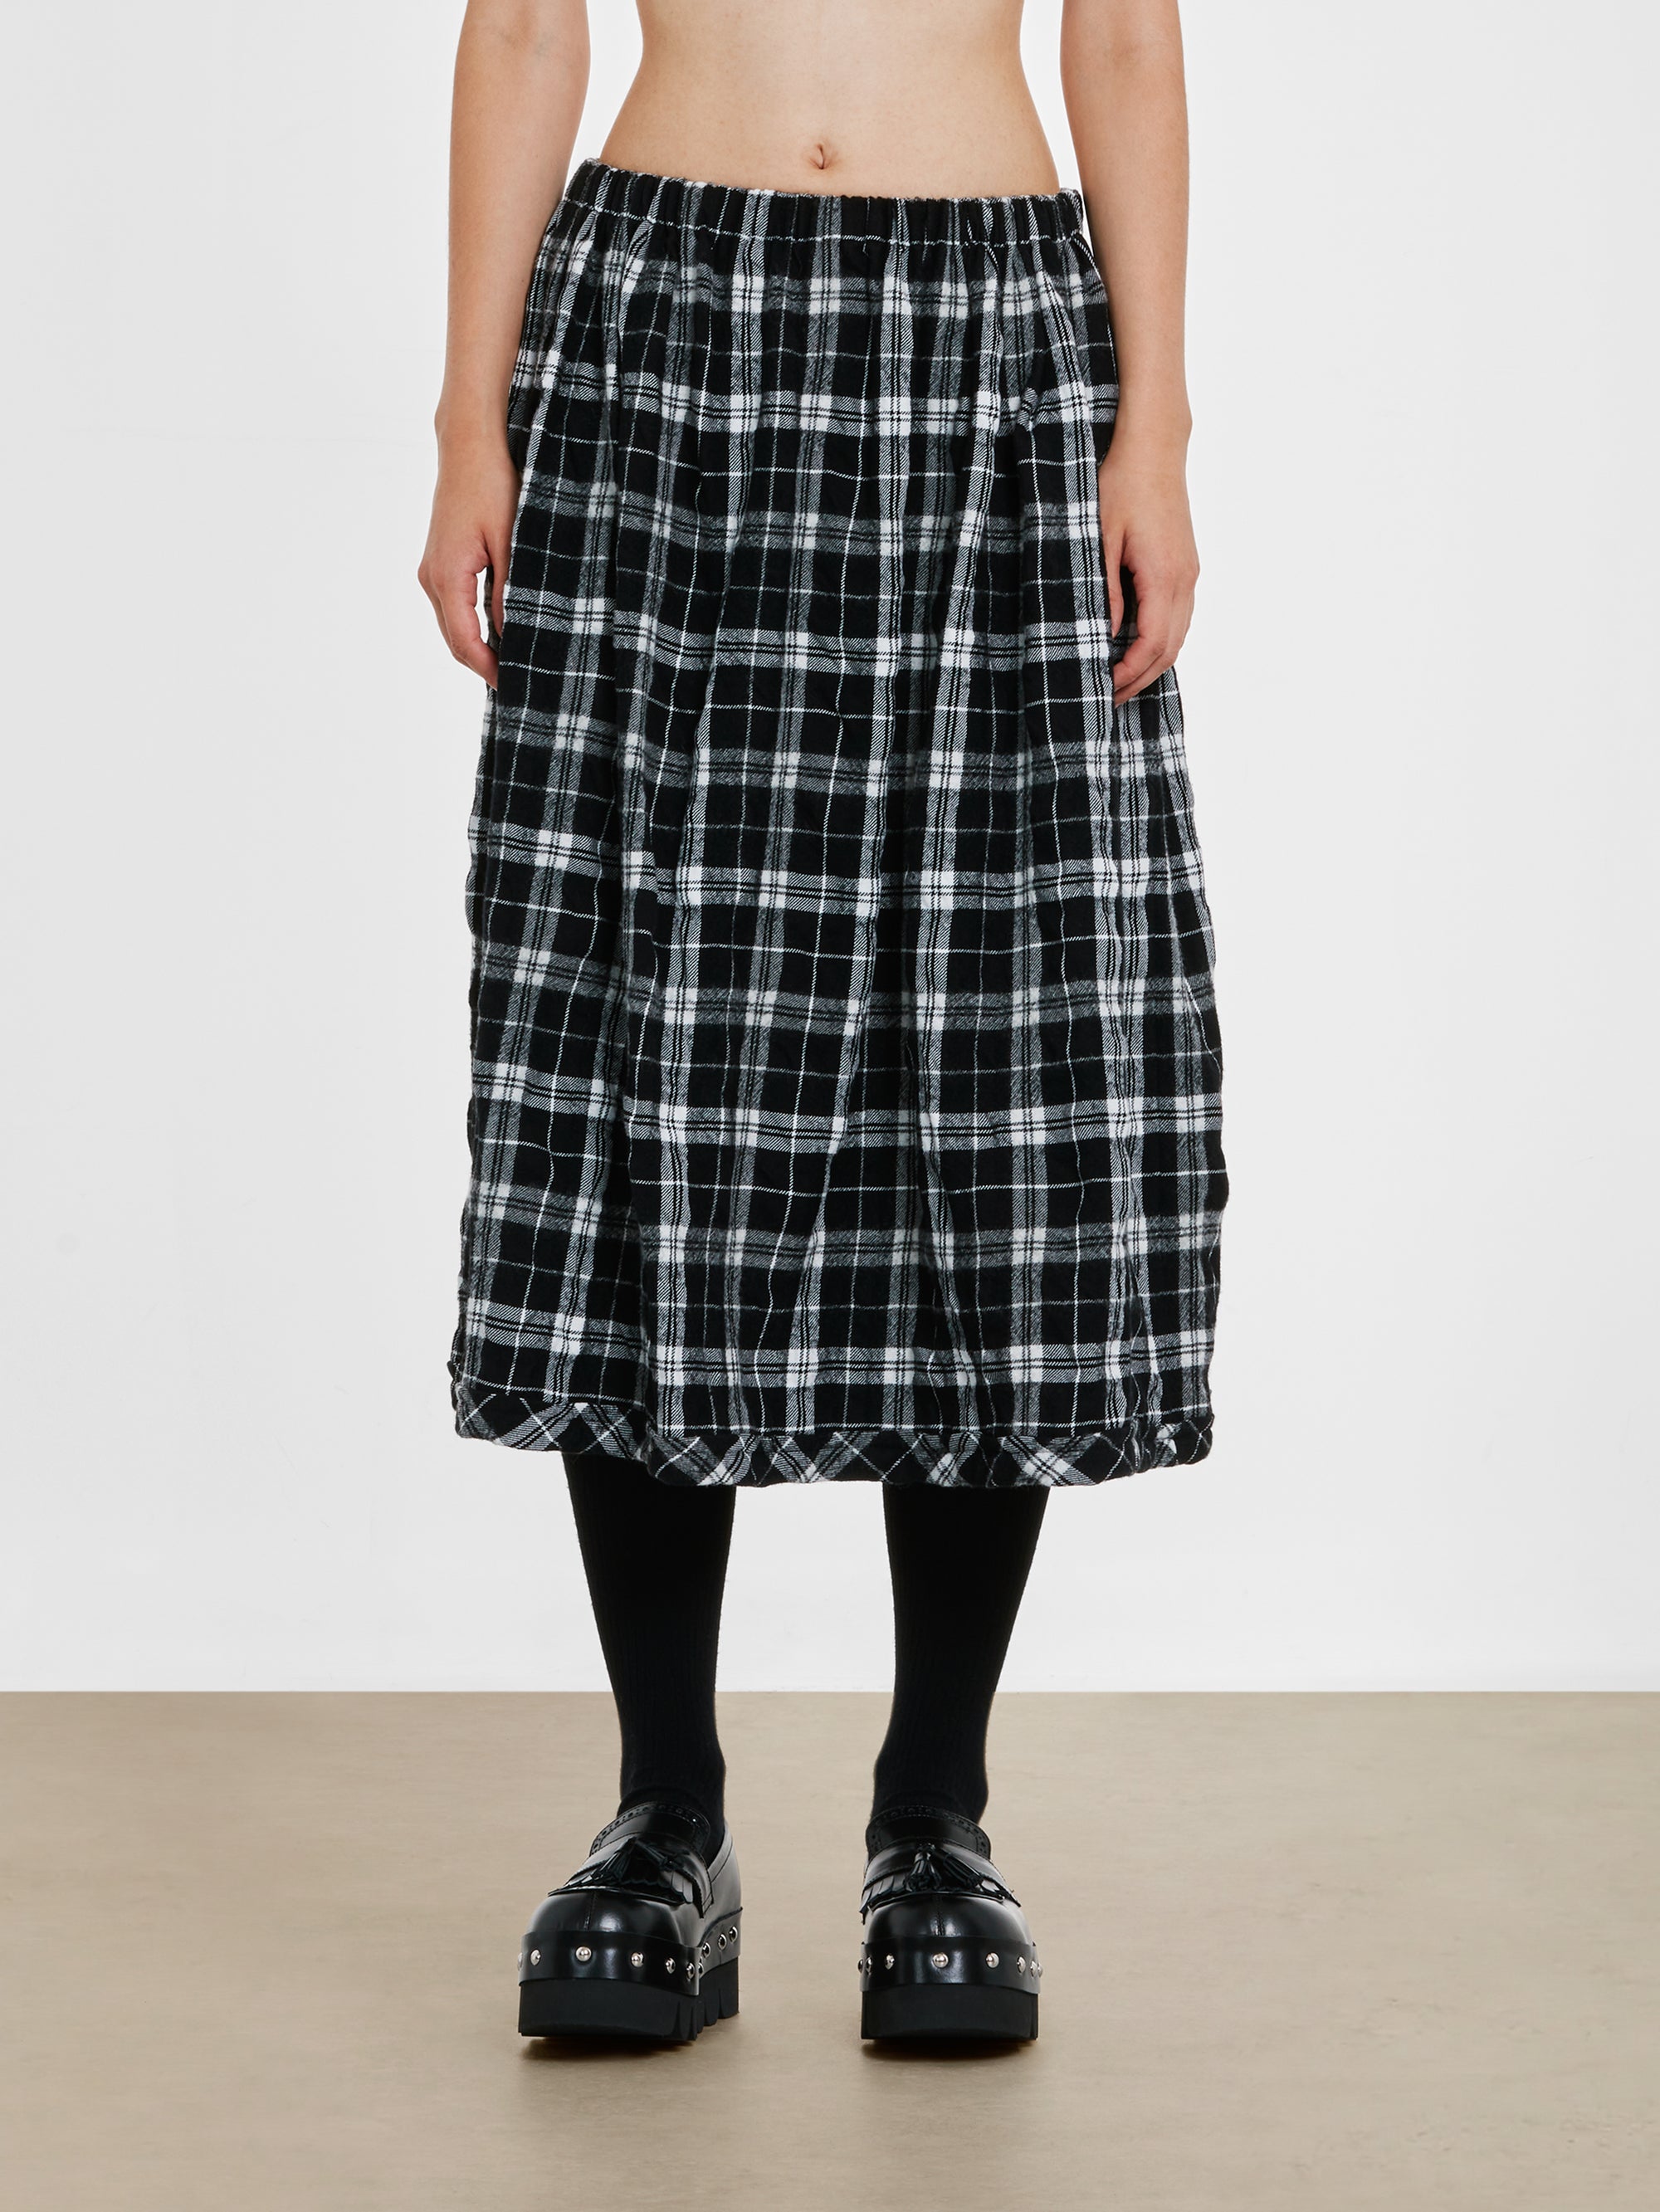 tao - Women's Tartan Skirt - (Black/White) view 1